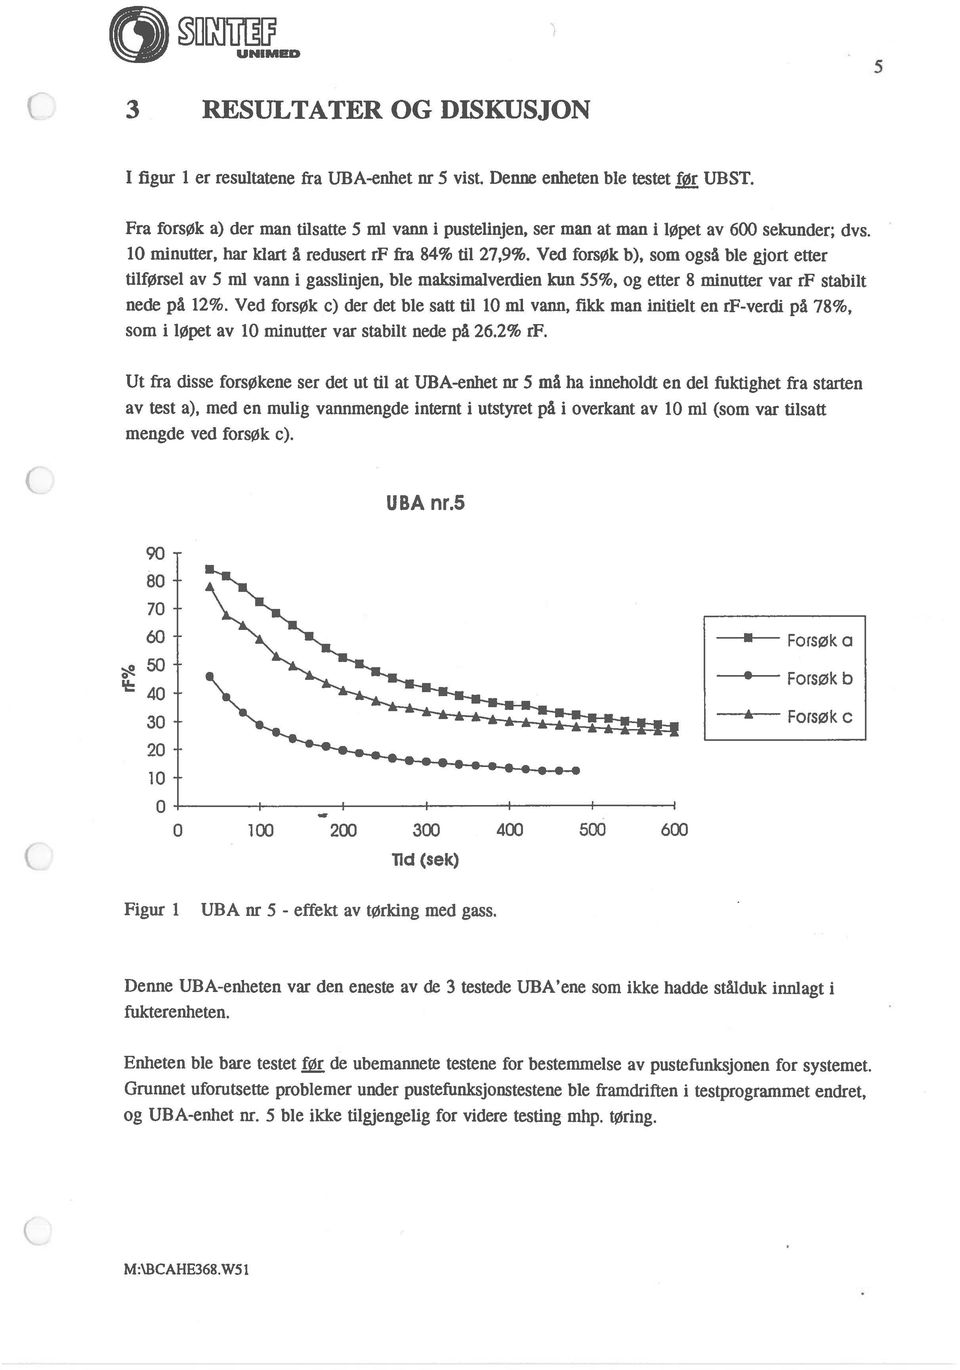 Ved forsøk b), som også ble gjort etter tilførsel av 5 ml vann i gasslinjen, ble maksimalverdien kun 55%, og etter 8 minutter var rf stabilt nede på 12%.